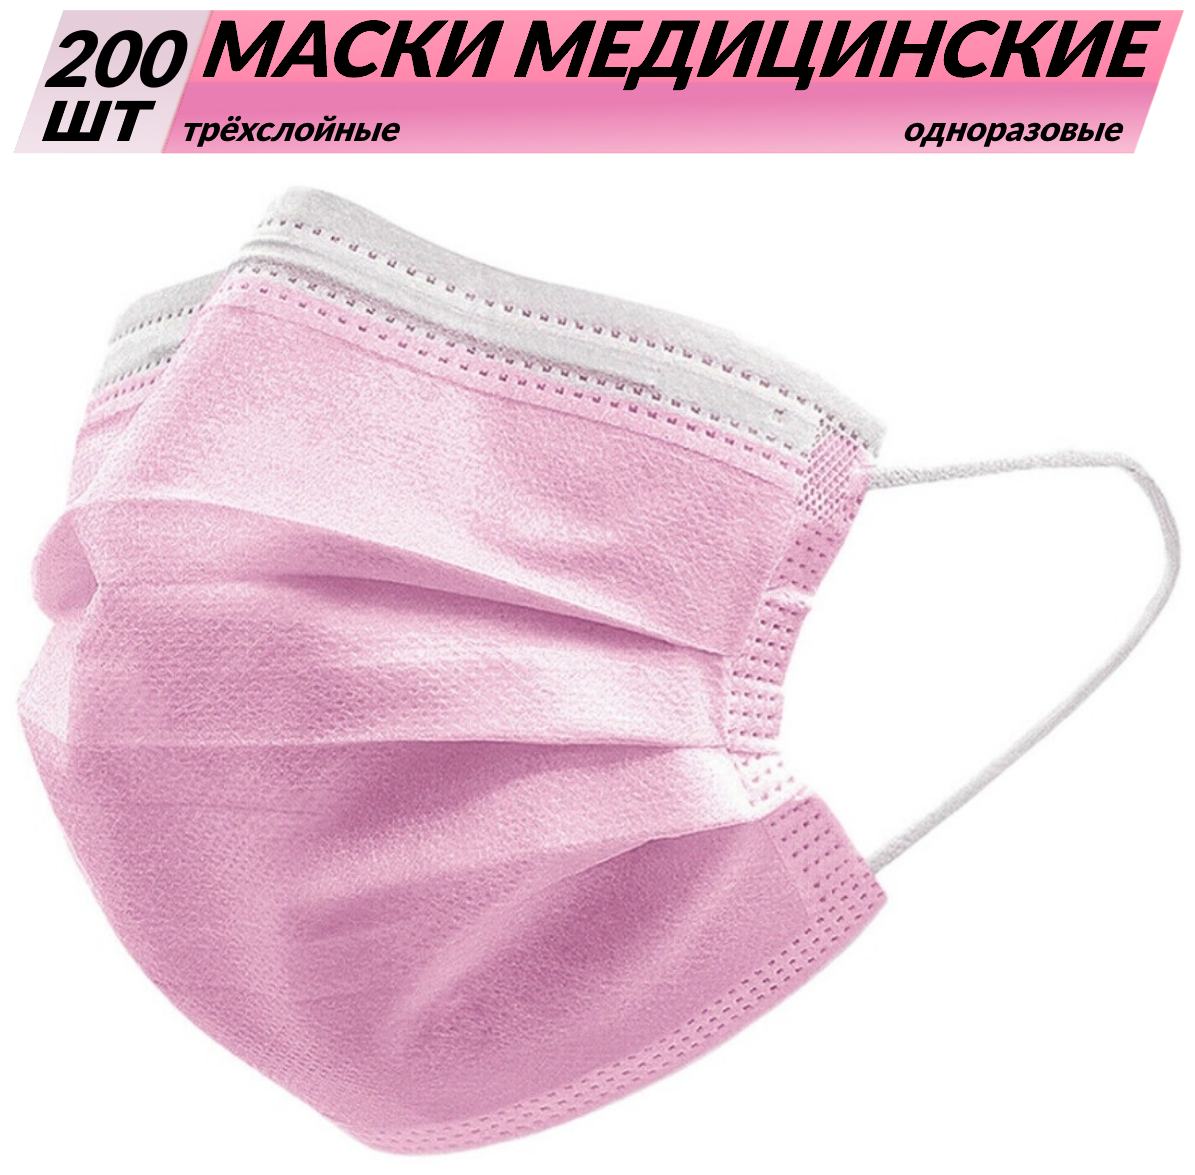 Одноразовые медицинские маски, 200 шт., розовые, (гигиенические маски трёхслойные из нетканного материала)